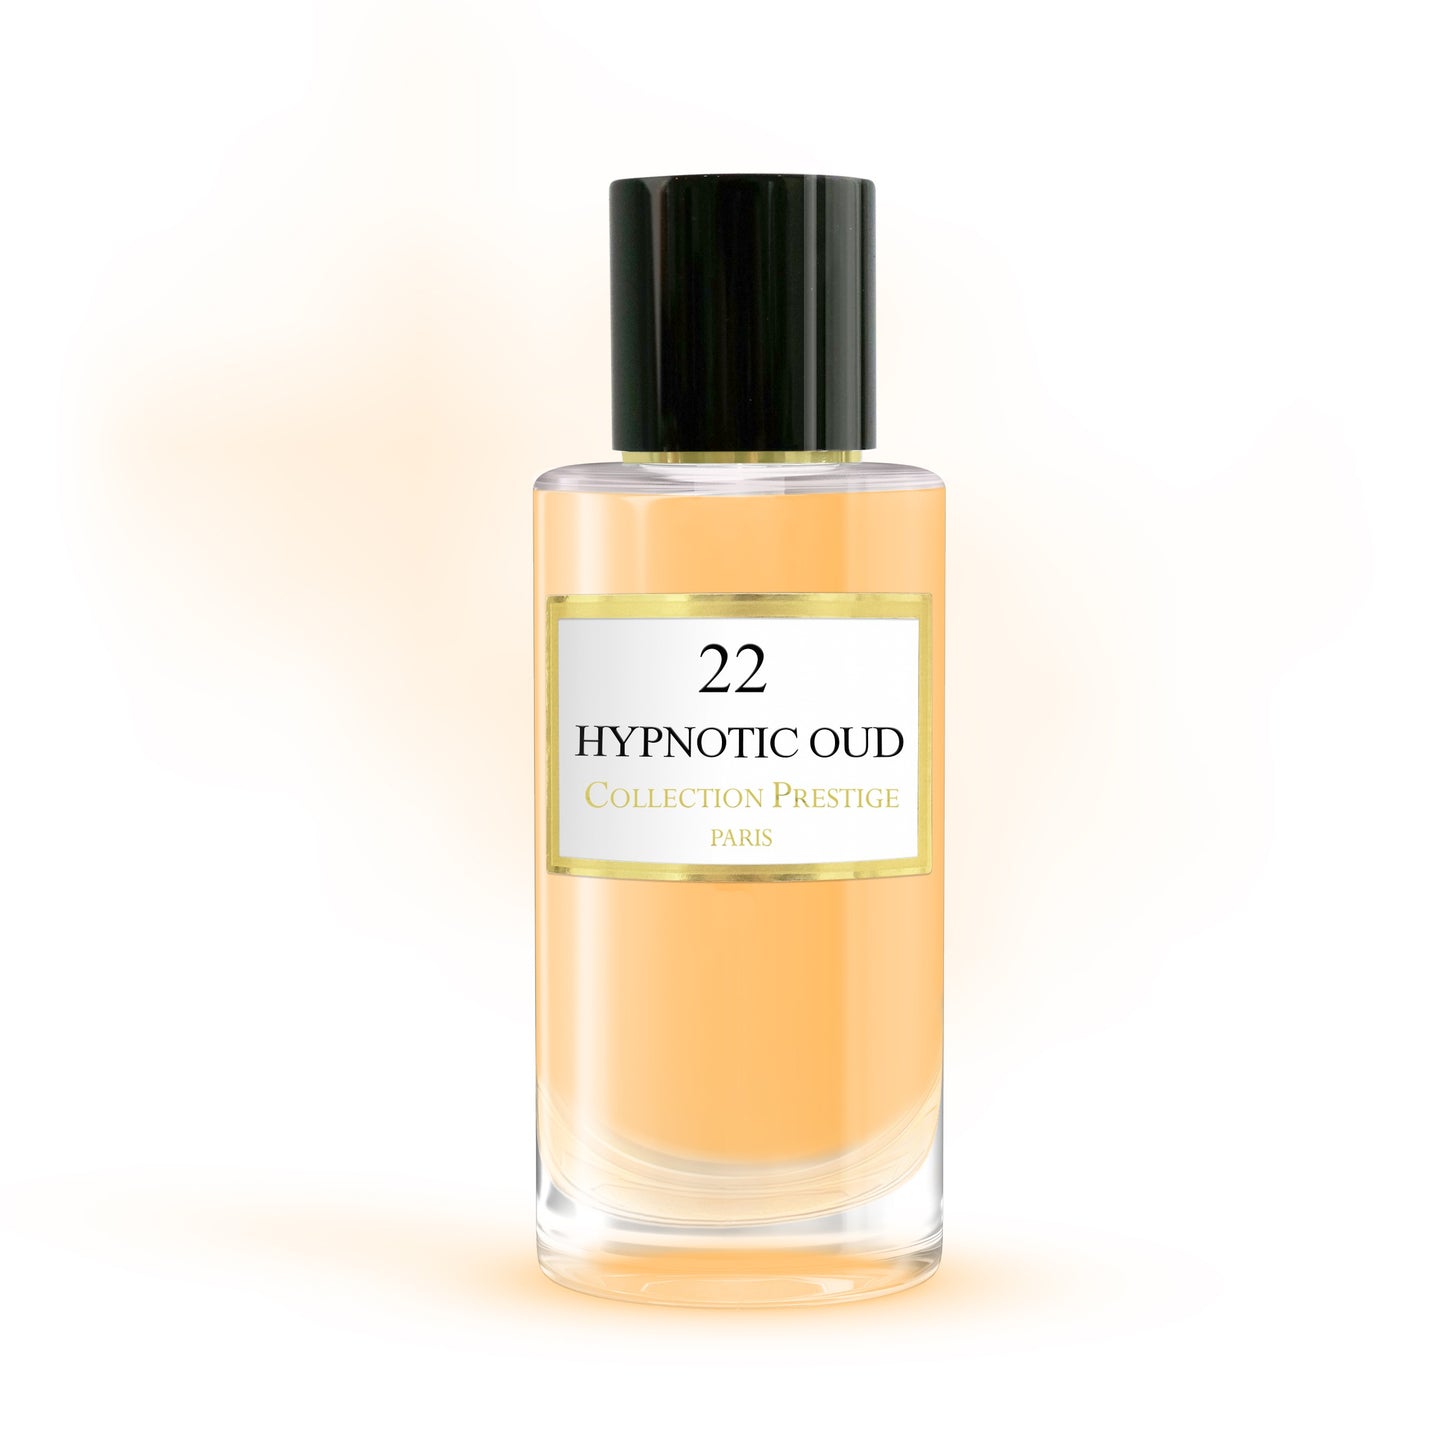 Collection Prestige - Hypnotic Oud - Eau de Parfum Mixte